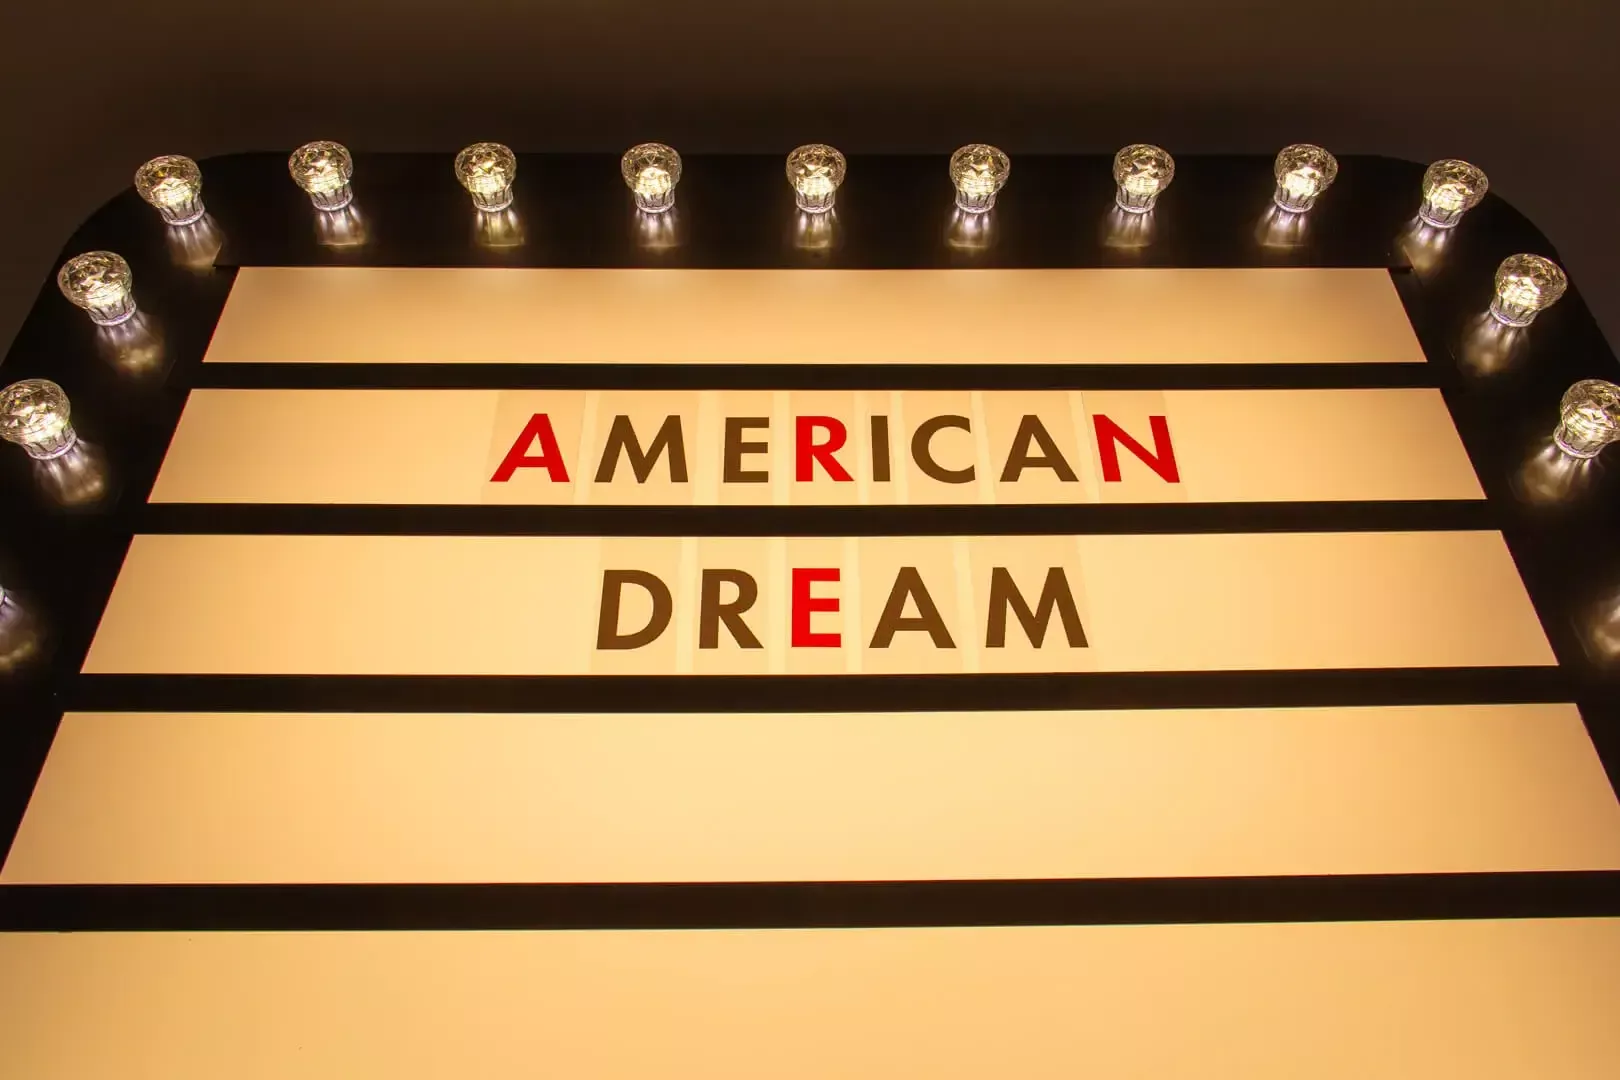 Le rêve américain - panneau d'affichage avec inscription "American Dream" (rêve américain)